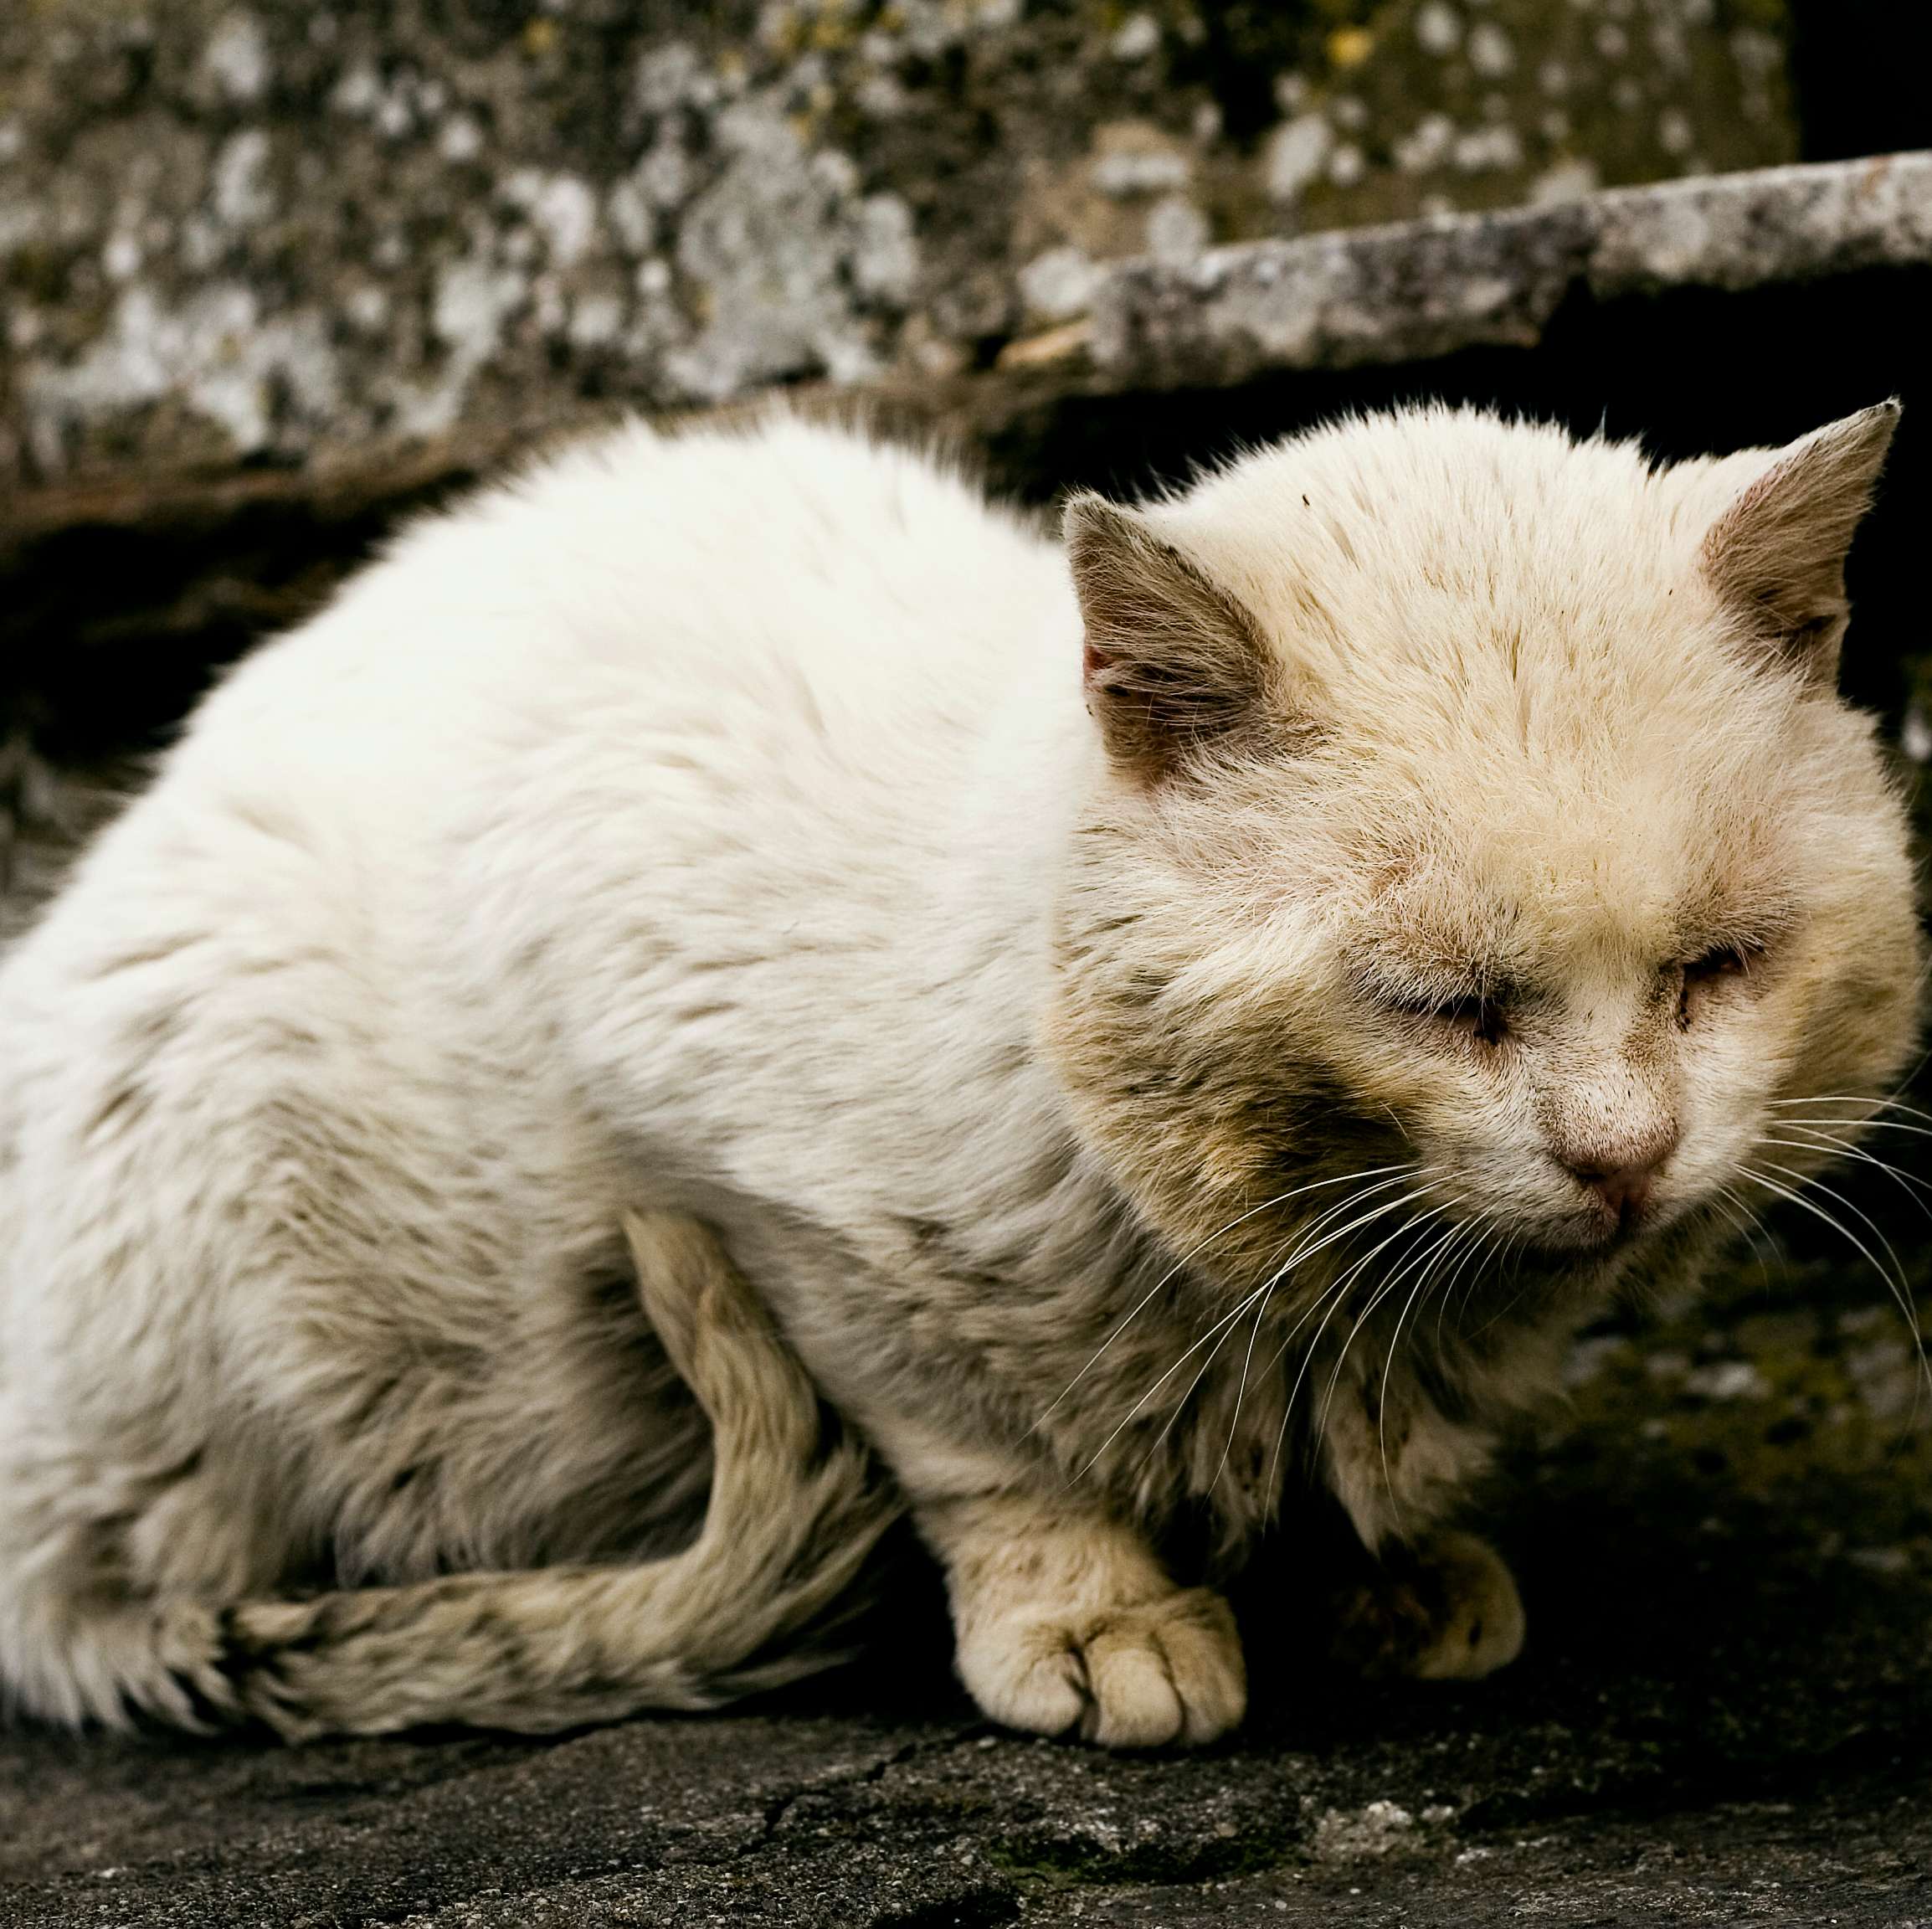 Weisse, krank aussehende Katze schmiegt sich an die Treppe